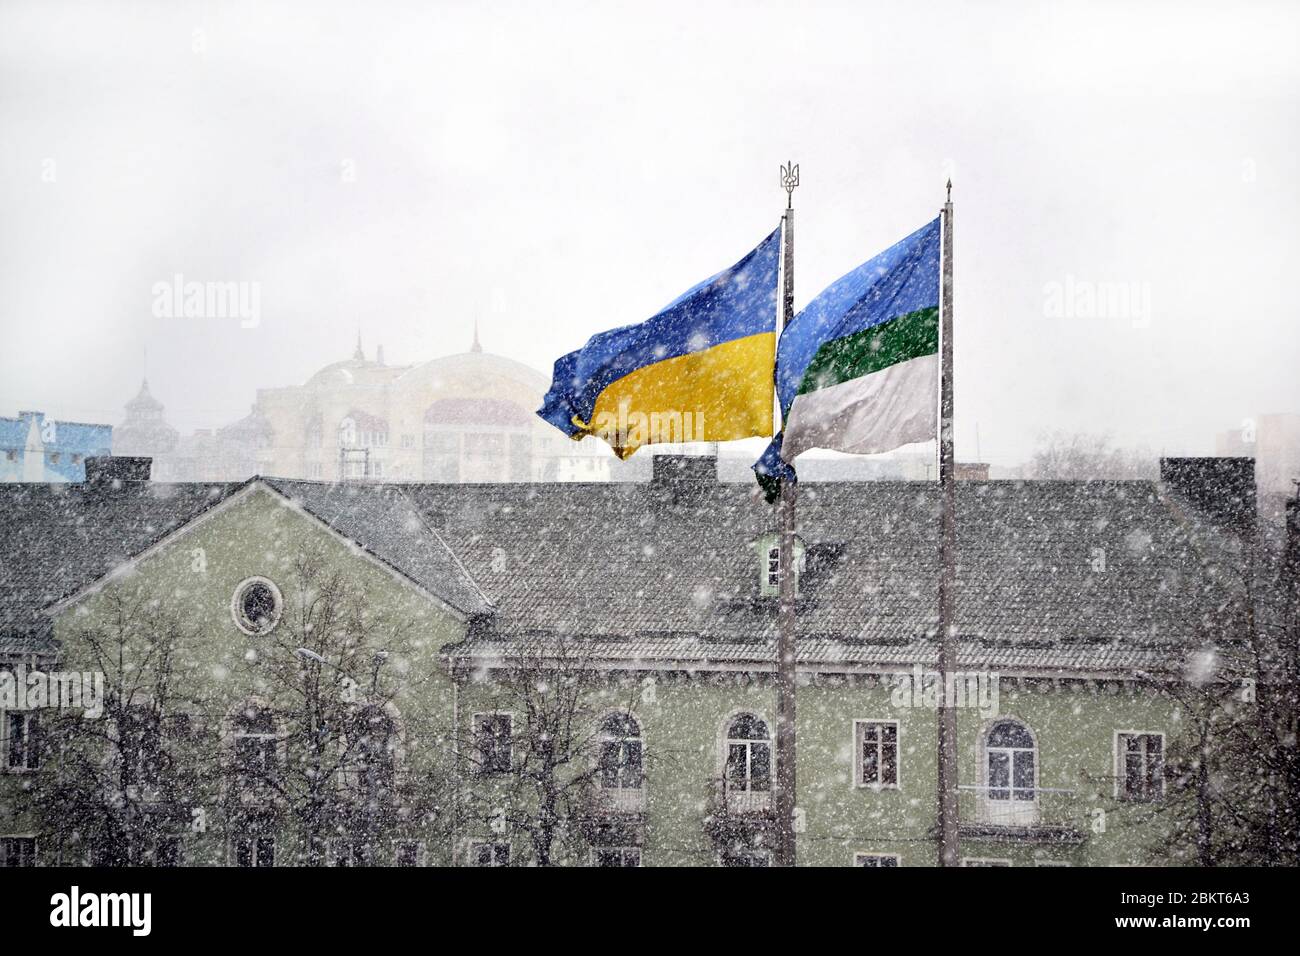 Drapeau national ukrainien et drapeau municipal de la ville de Rivne flottant dans le vent pendant la chute de neige contre les bâtiments Banque D'Images